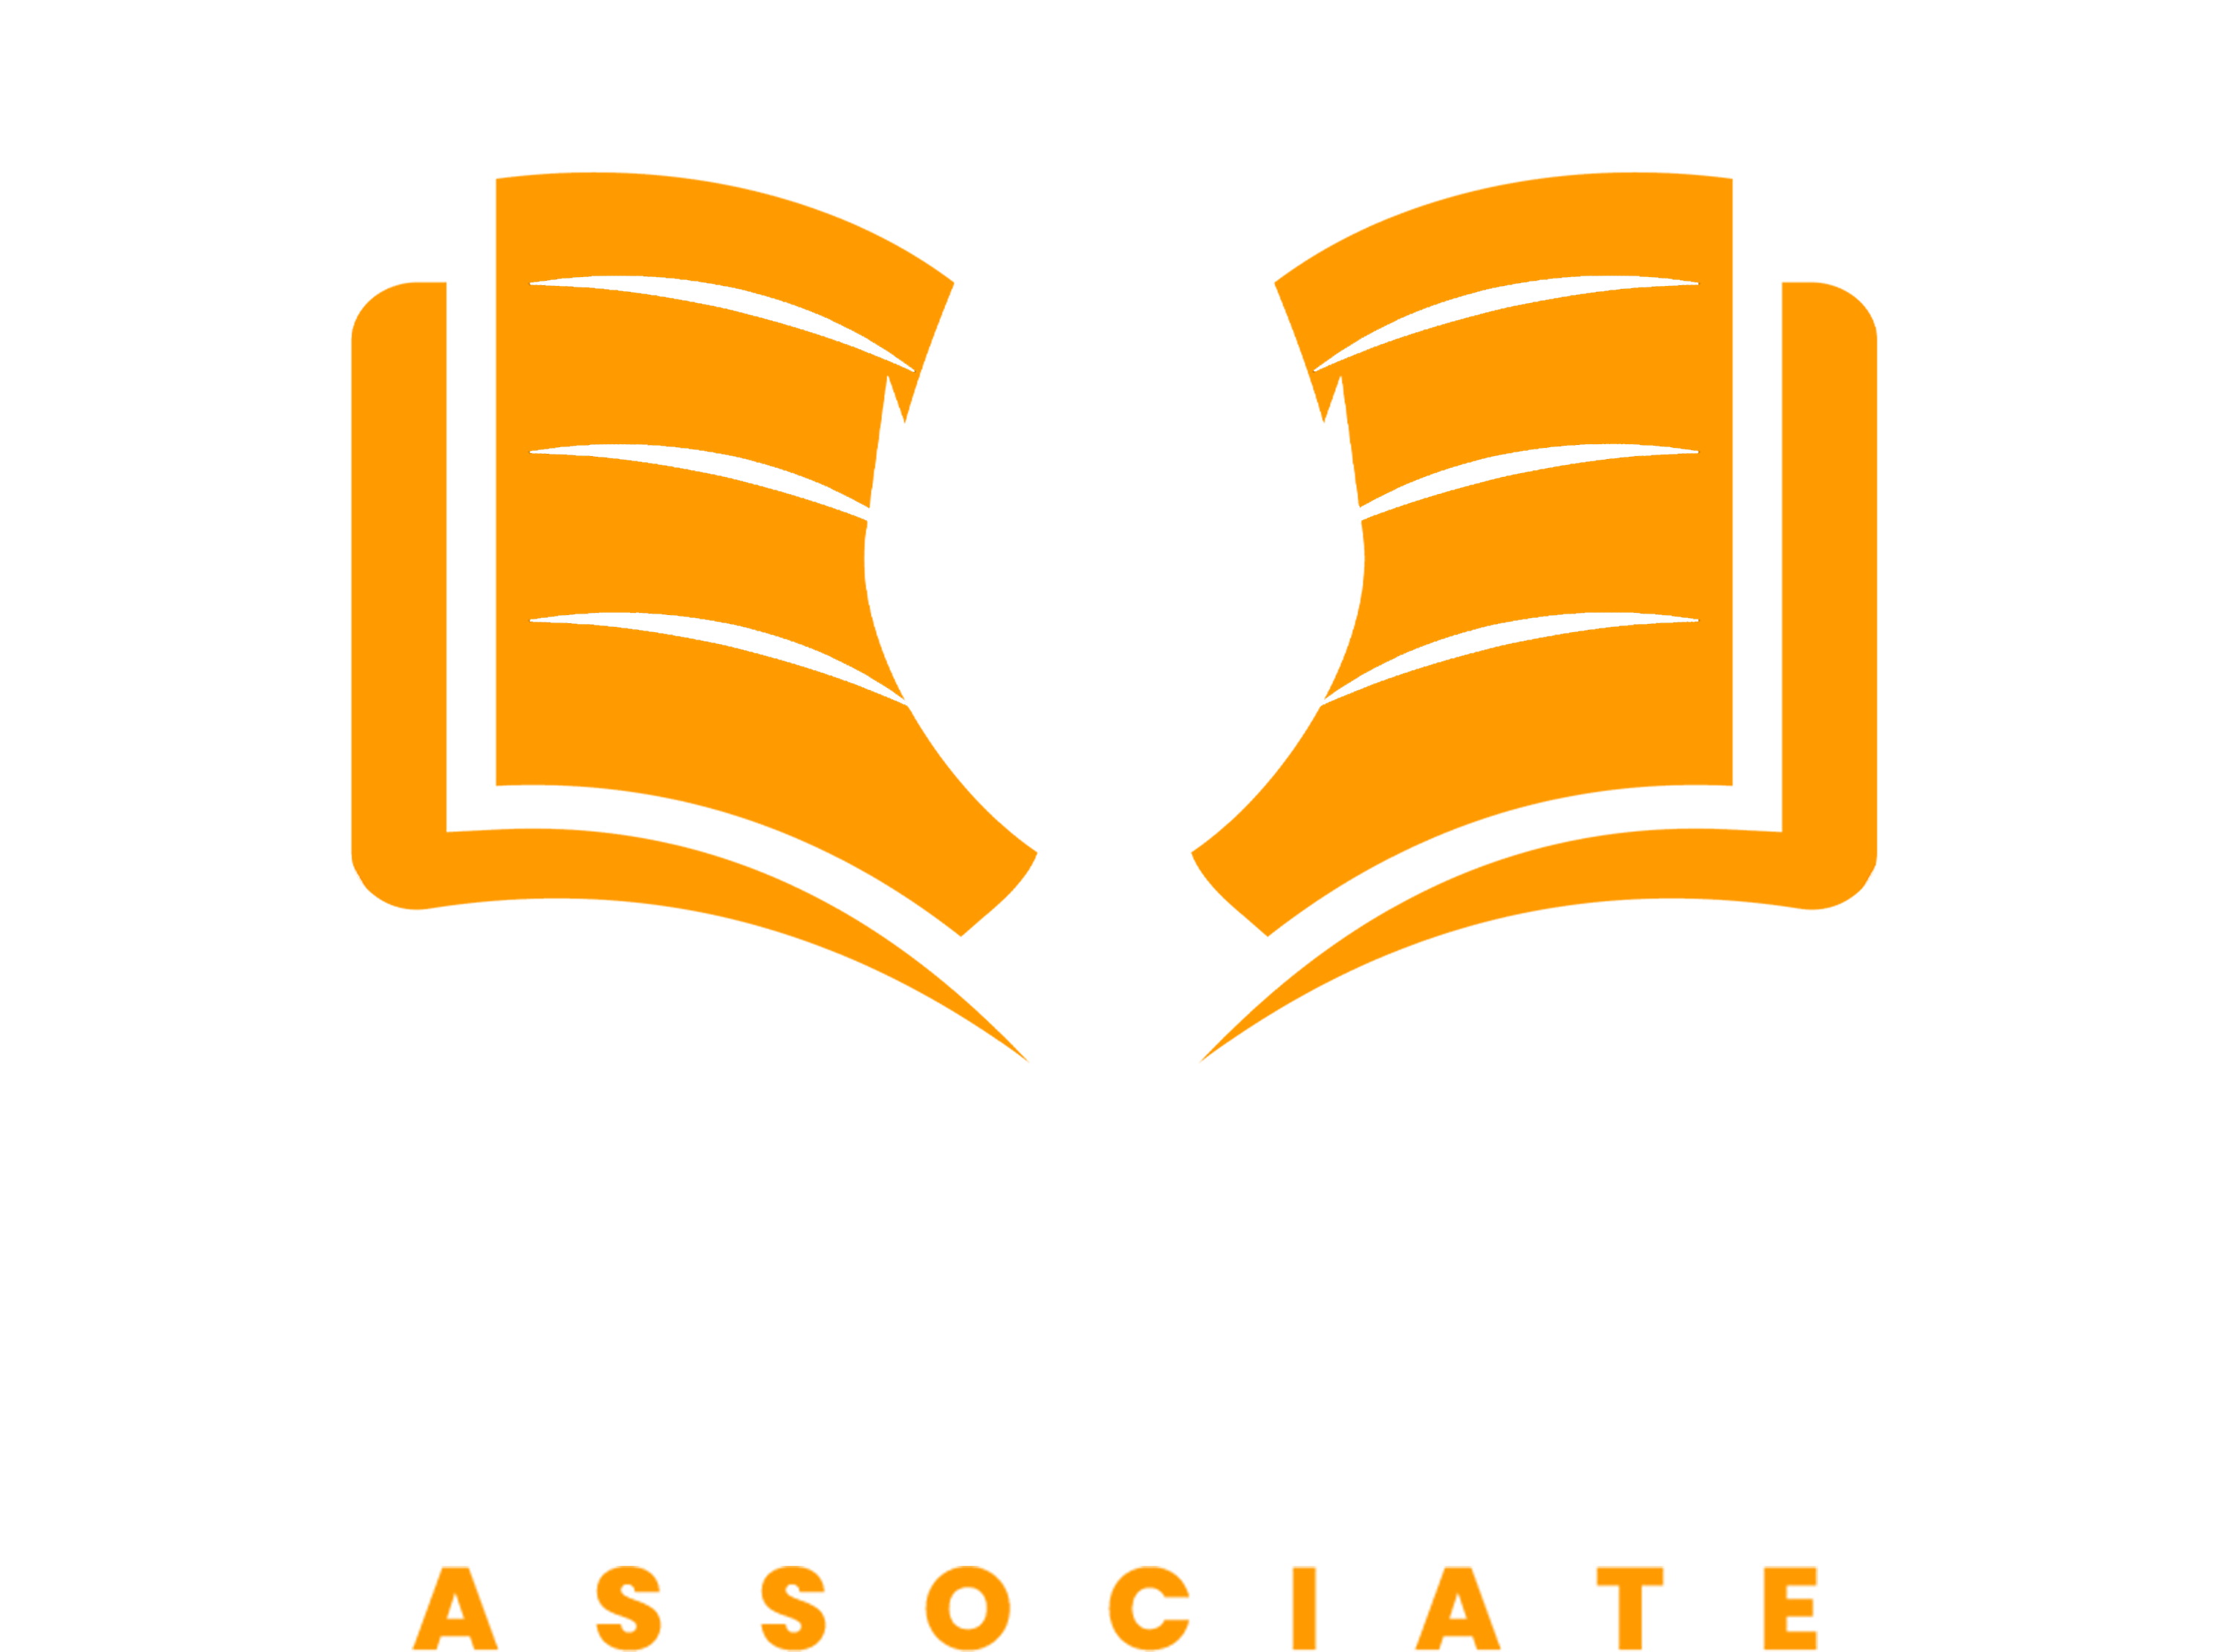 Amazon Publishing Associate